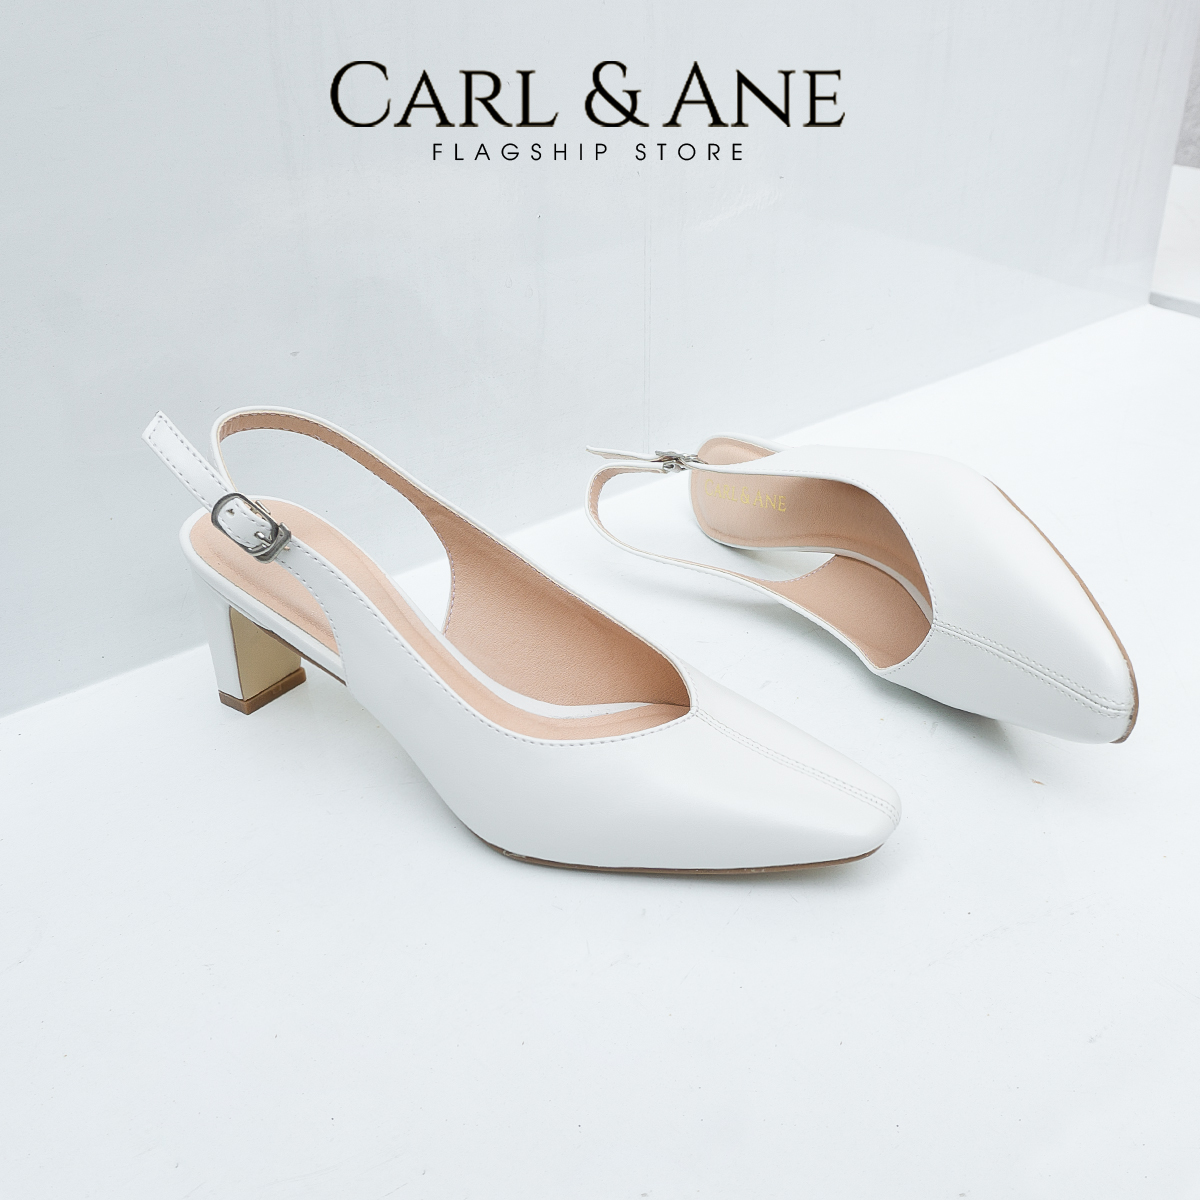 Carl & Ane - Giày cao gót mũi nhọn phối quai thời trang công sở cao 6cm màu nude - CL027